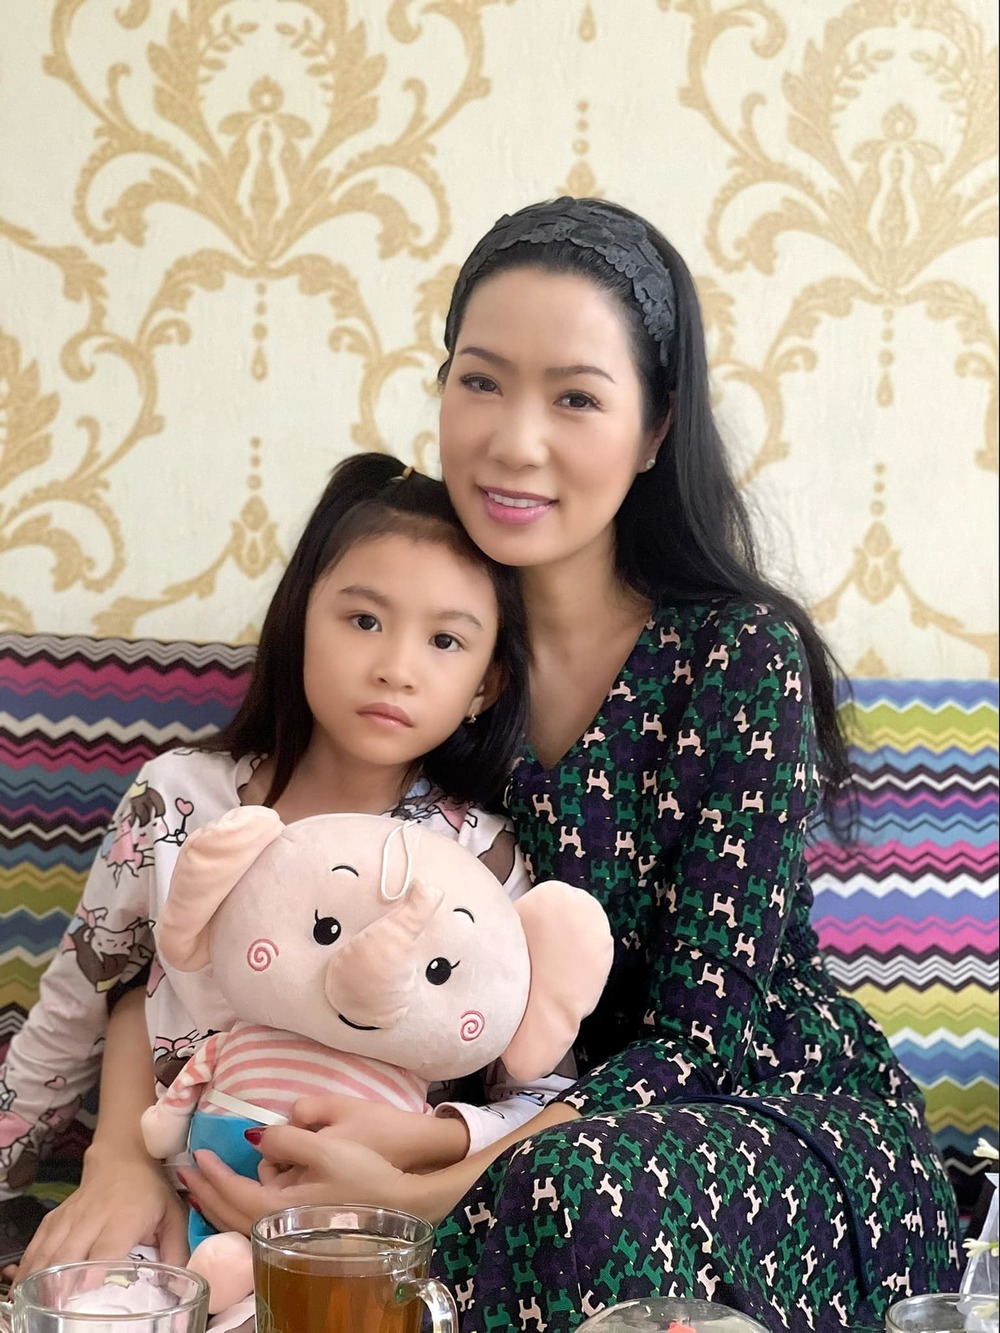 Thương Tín được tài trợ tiền làm răng, con gái lộ diện nhận bảo hiểm gần 300 triệu - Ảnh 3